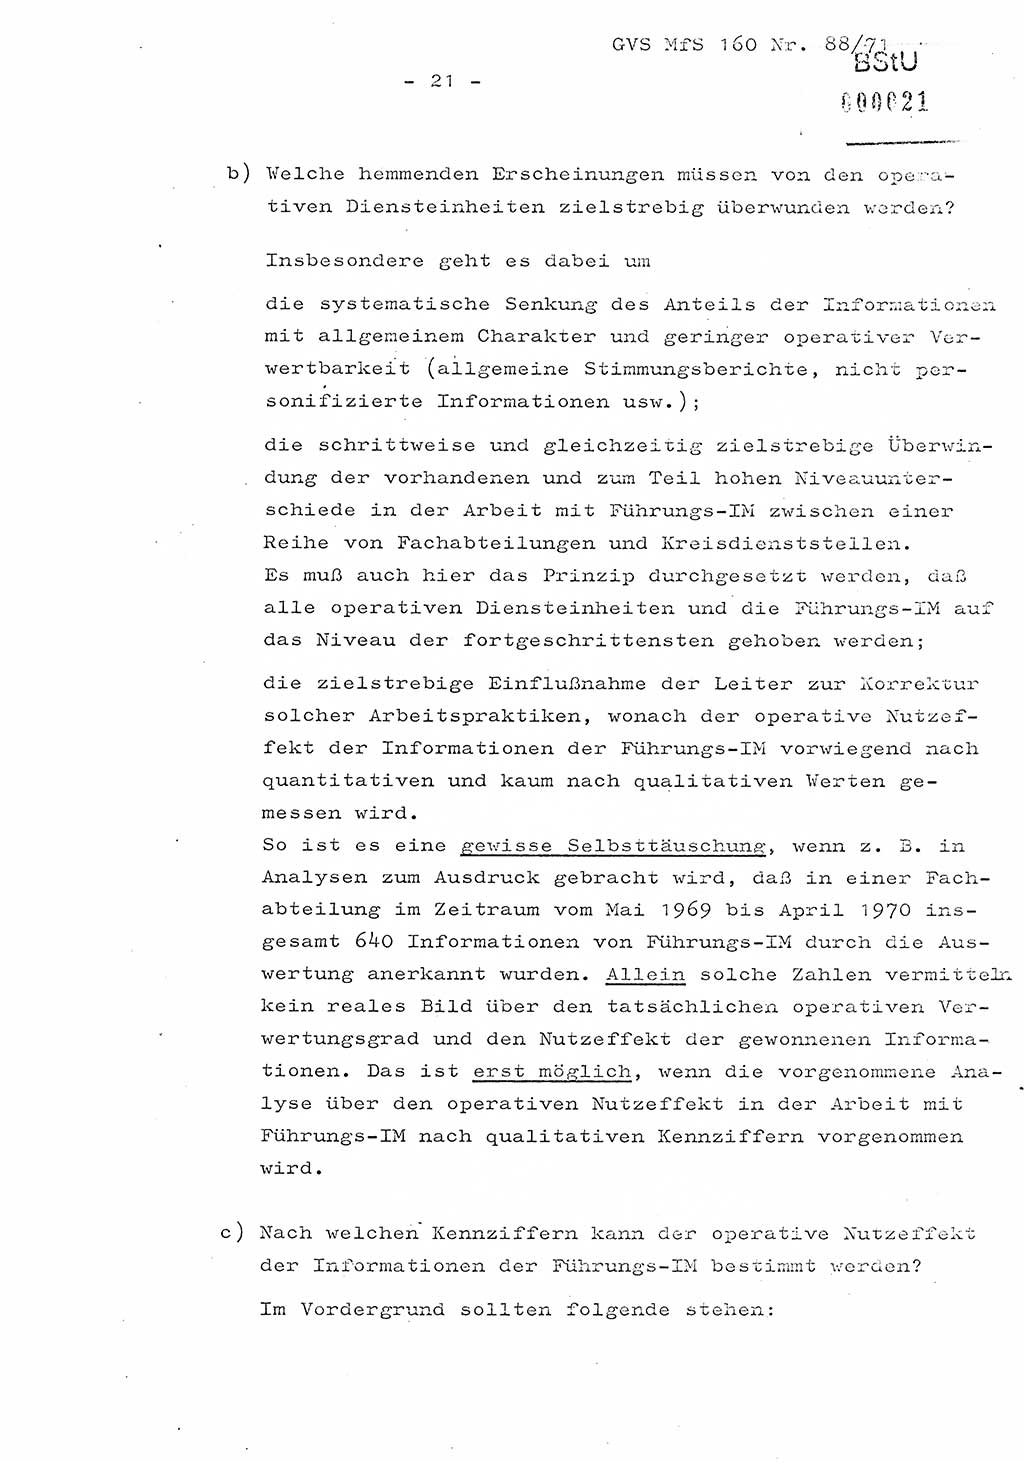 Dissertation Oberstleutnant Josef Schwarz (BV Schwerin), Major Fritz Amm (JHS), Hauptmann Peter Gräßler (JHS), Ministerium für Staatssicherheit (MfS) [Deutsche Demokratische Republik (DDR)], Juristische Hochschule (JHS), Geheime Verschlußsache (GVS) 160-88/71, Potsdam 1972, Seite 21 (Diss. MfS DDR JHS GVS 160-88/71 1972, S. 21)